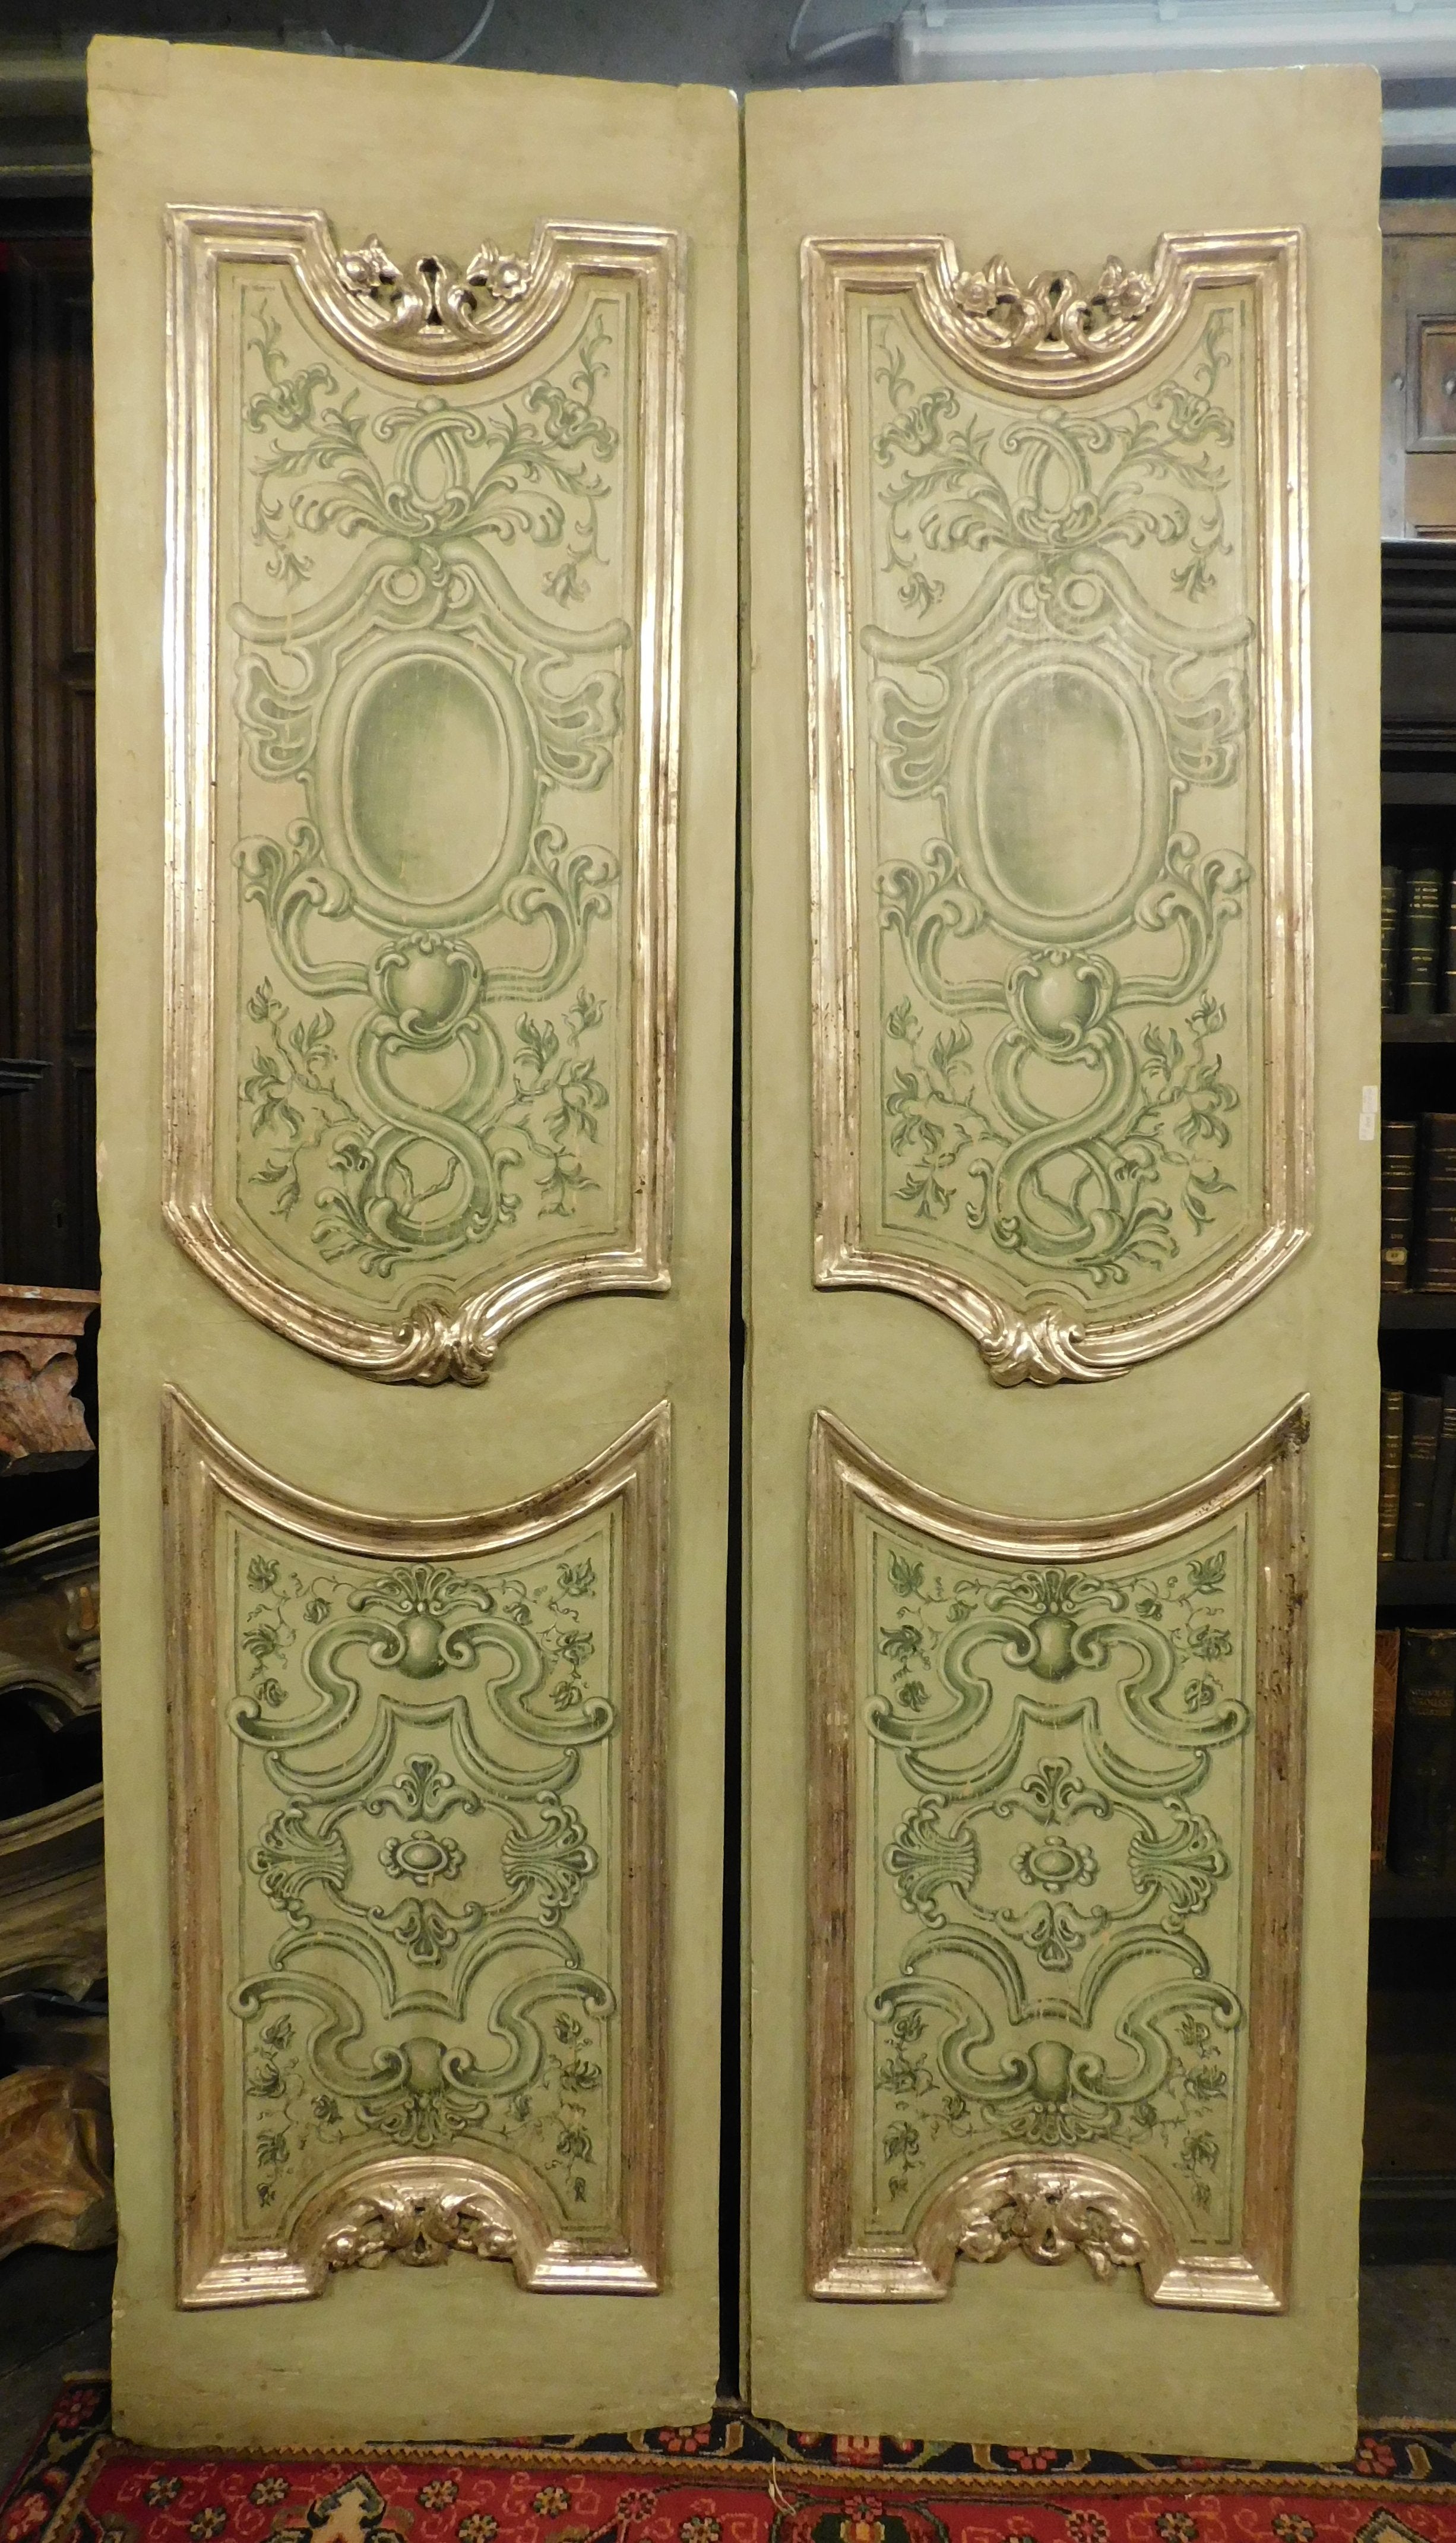 Ensemble de 4 portes anciennes à deux battants, richement peintes à la main, sculptées en molure et en argent, de grande valeur et indisponibles en cette quantité et qualité, réalisées par des maîtres artisans en Italie au milieu du 18ème